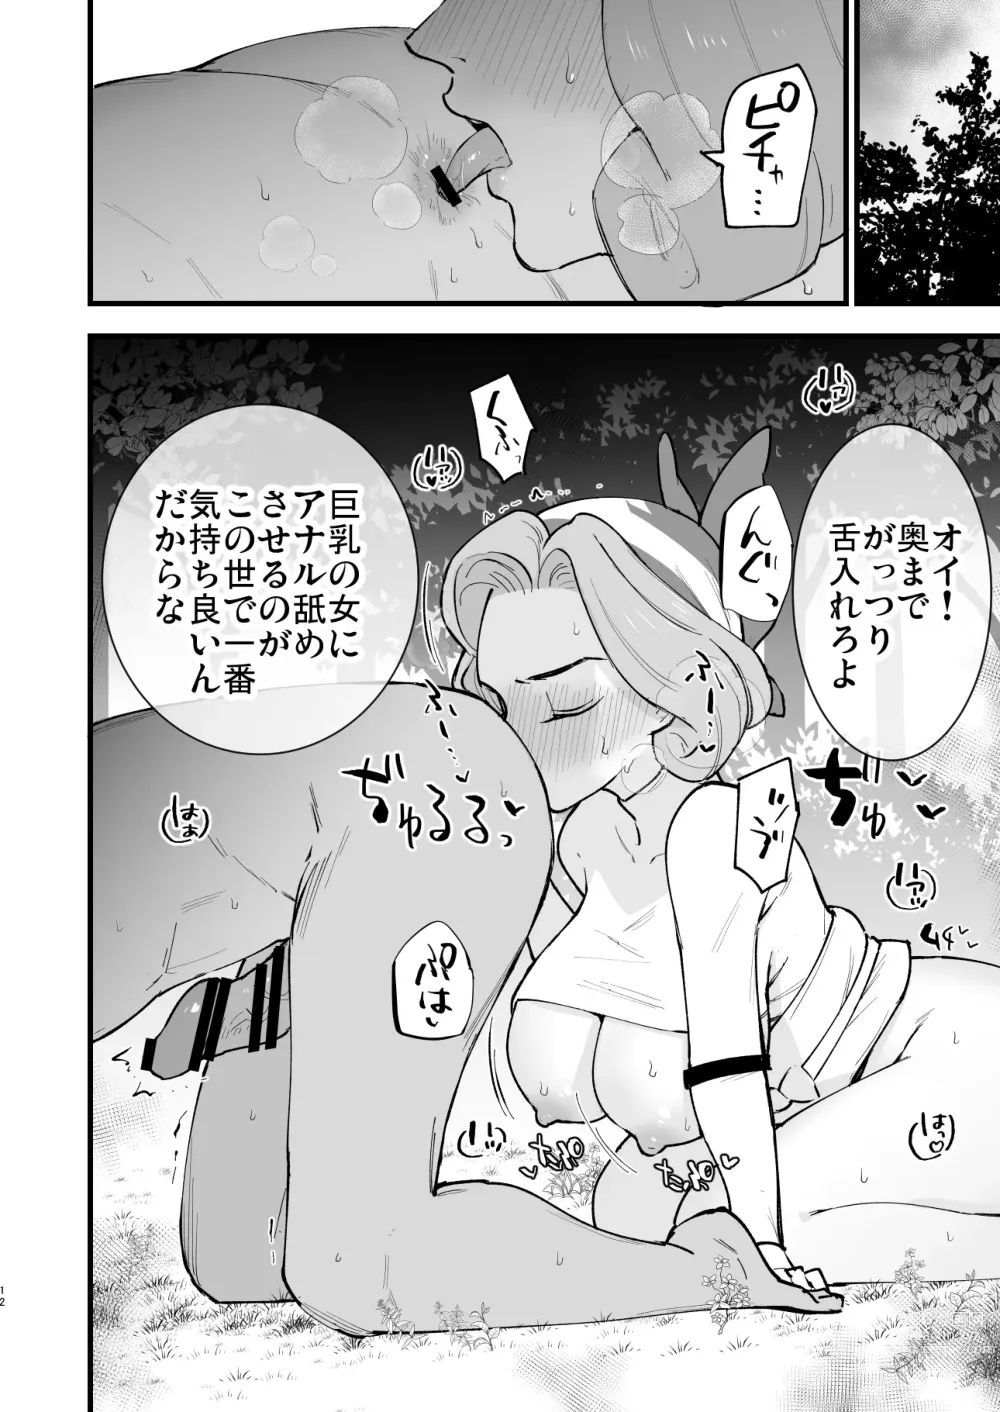 Page 12 of doujinshi Hisui Tensei-roku 3